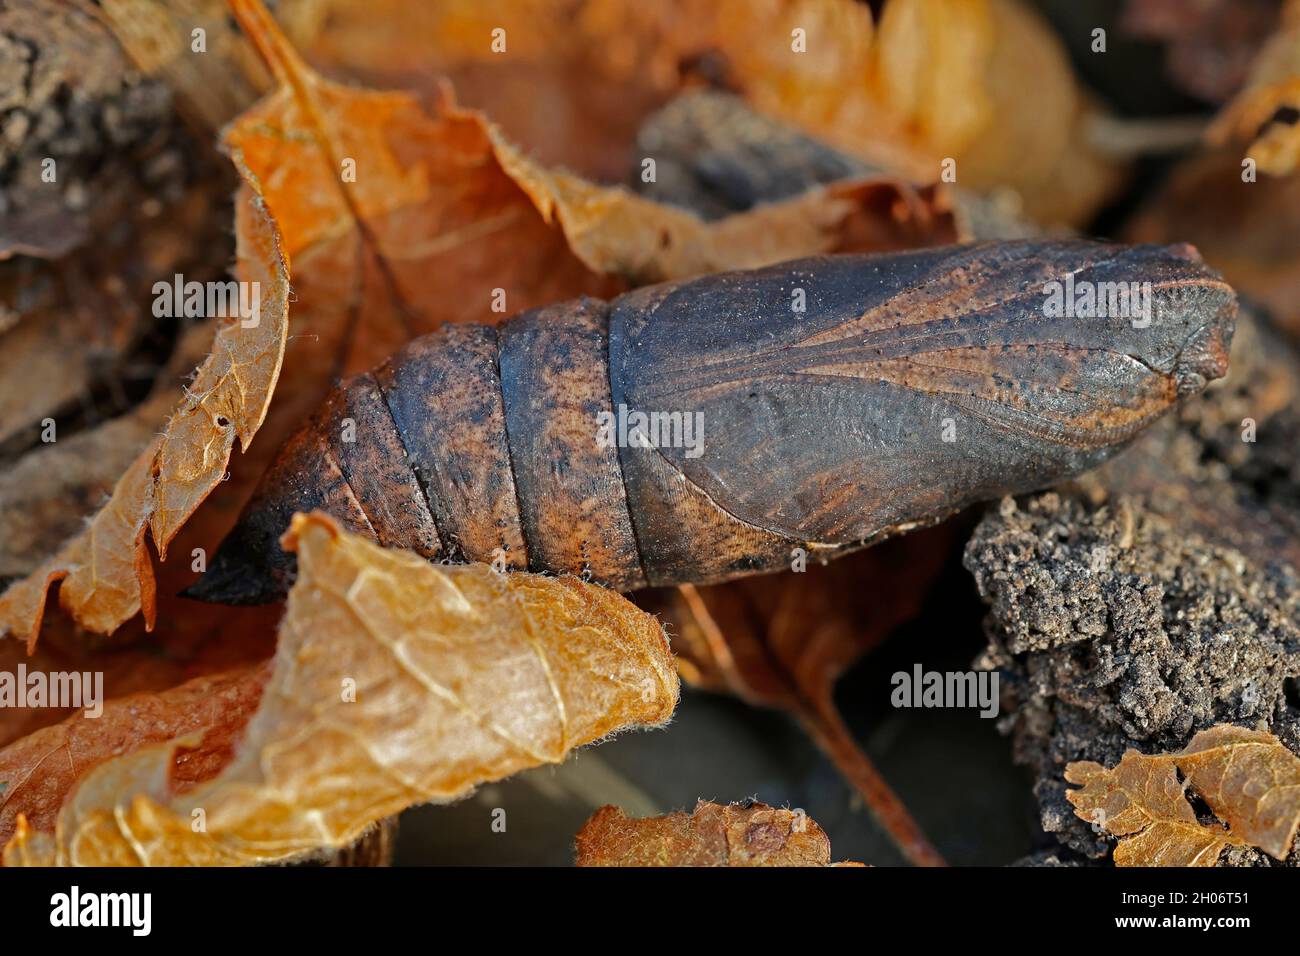 Pupa or chrysalis of Elephant hawk moth Deilephila elpenor overwintering in dead leaves Cotswold UK Stock Photo